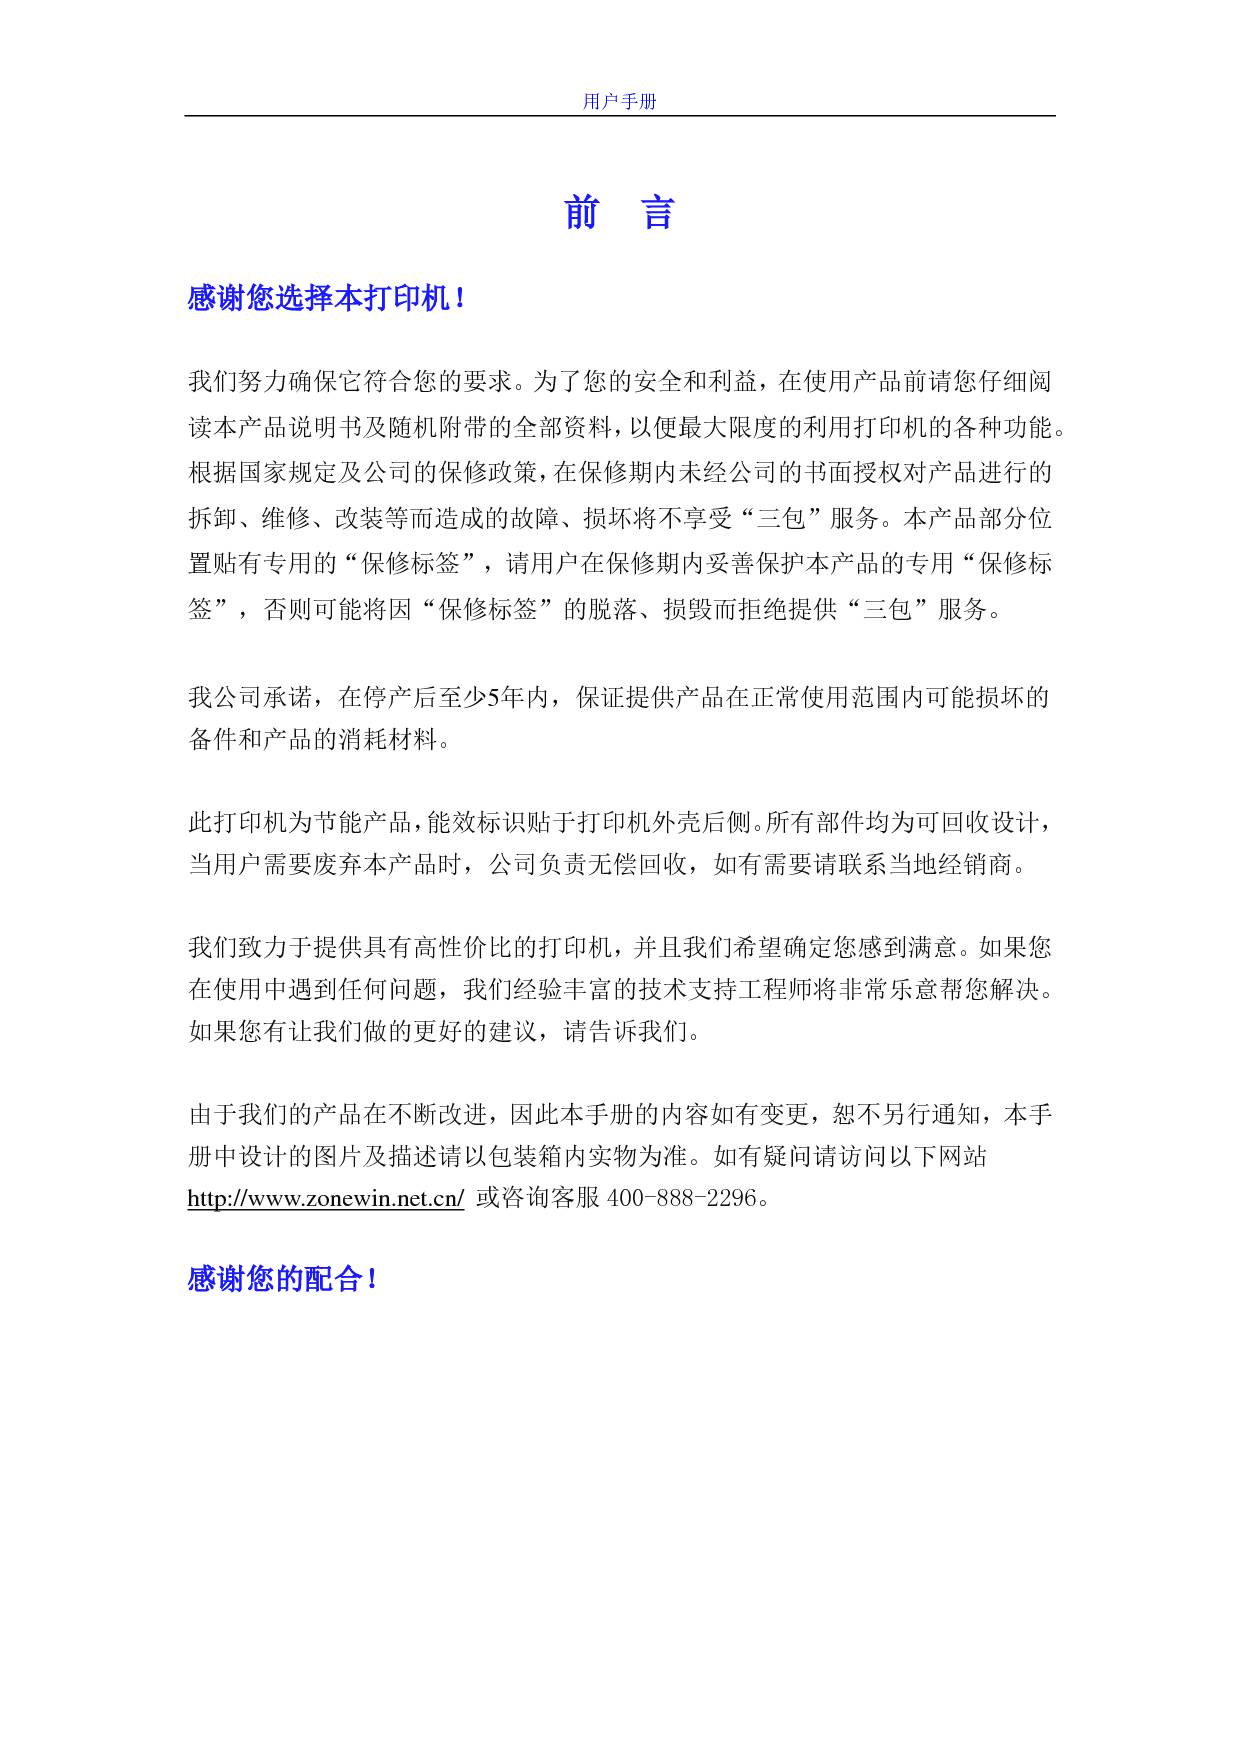 中盈 Zonewin NX-1870 用户手册 第2页